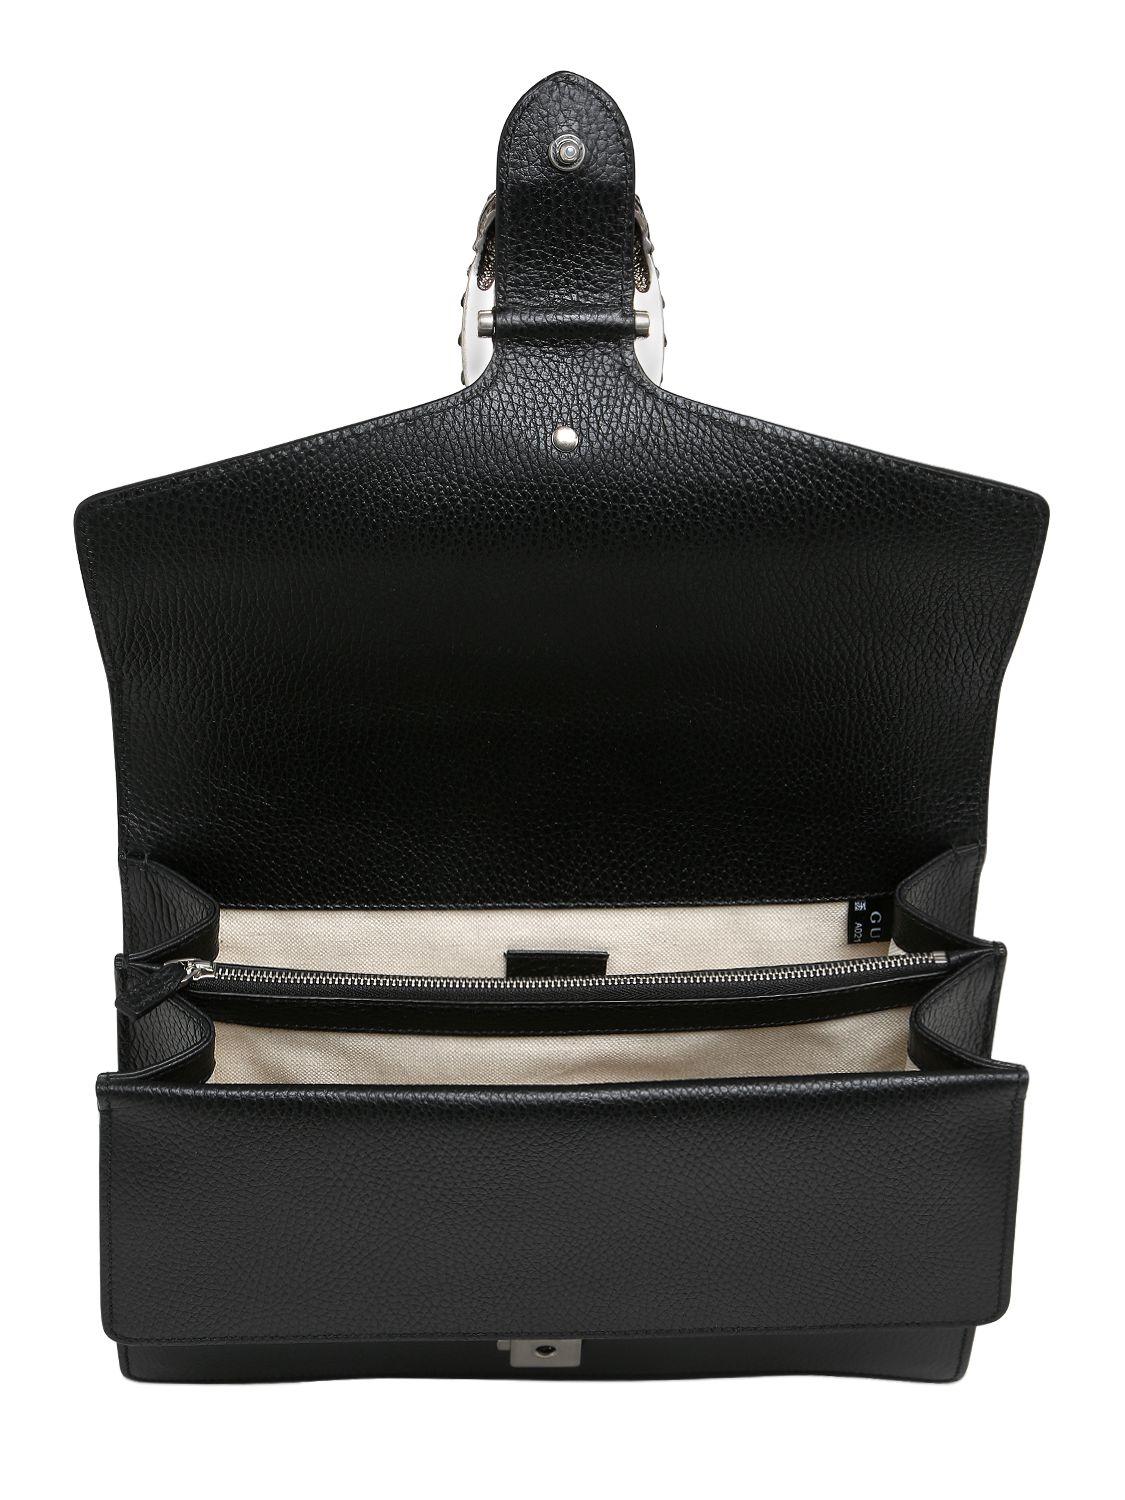 Lyst - Gucci Medium Dionysus Bag W/ Swarovski Buckle in Black